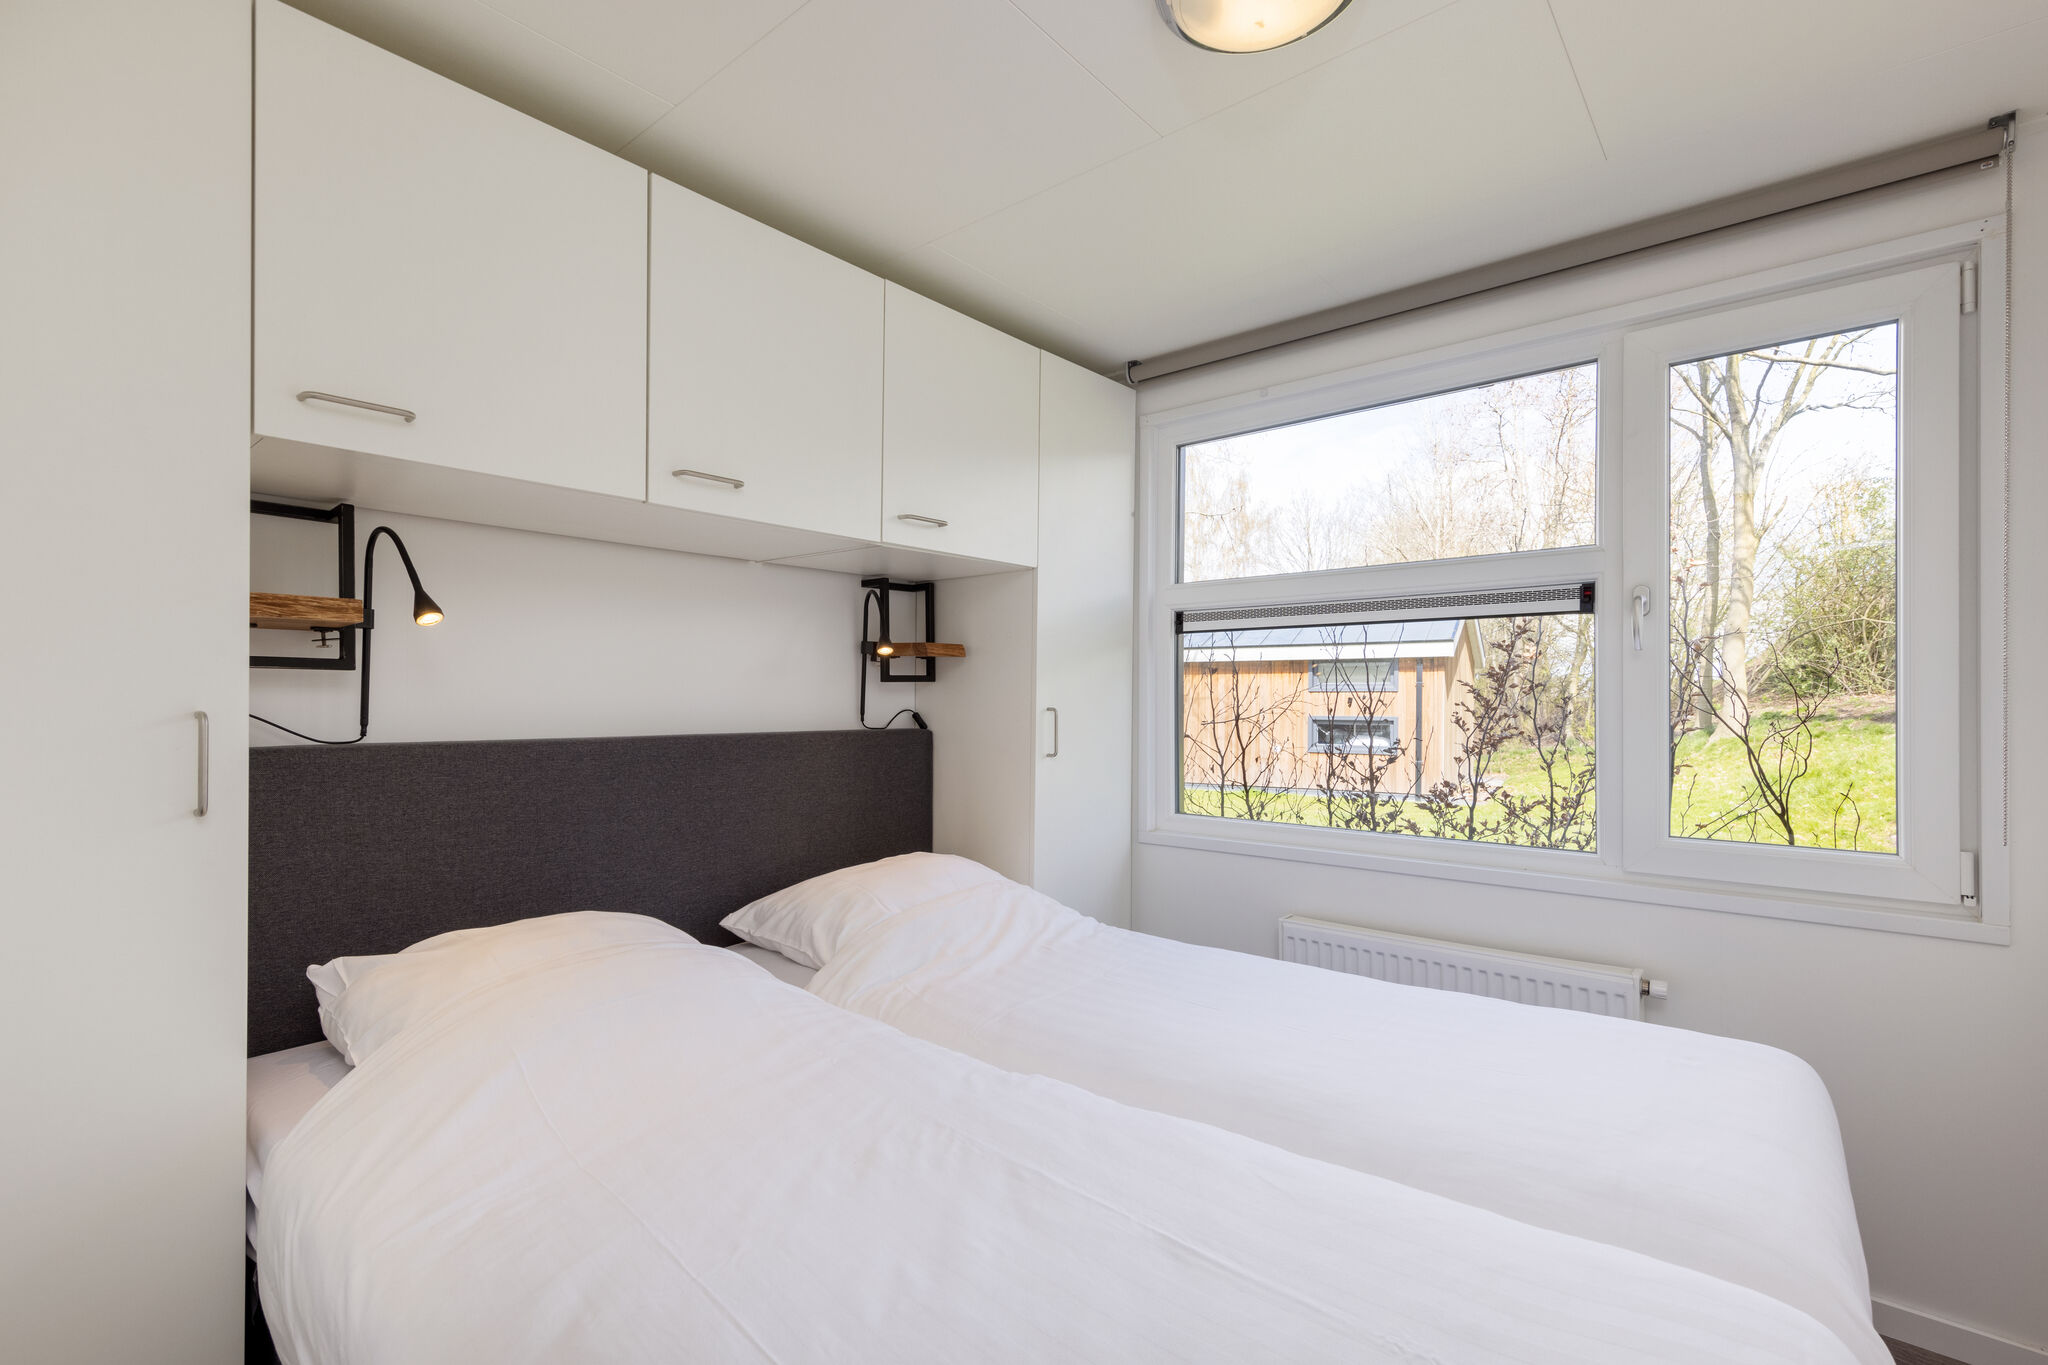 Lodge moderne avec air conditionné, dans la verte Twente